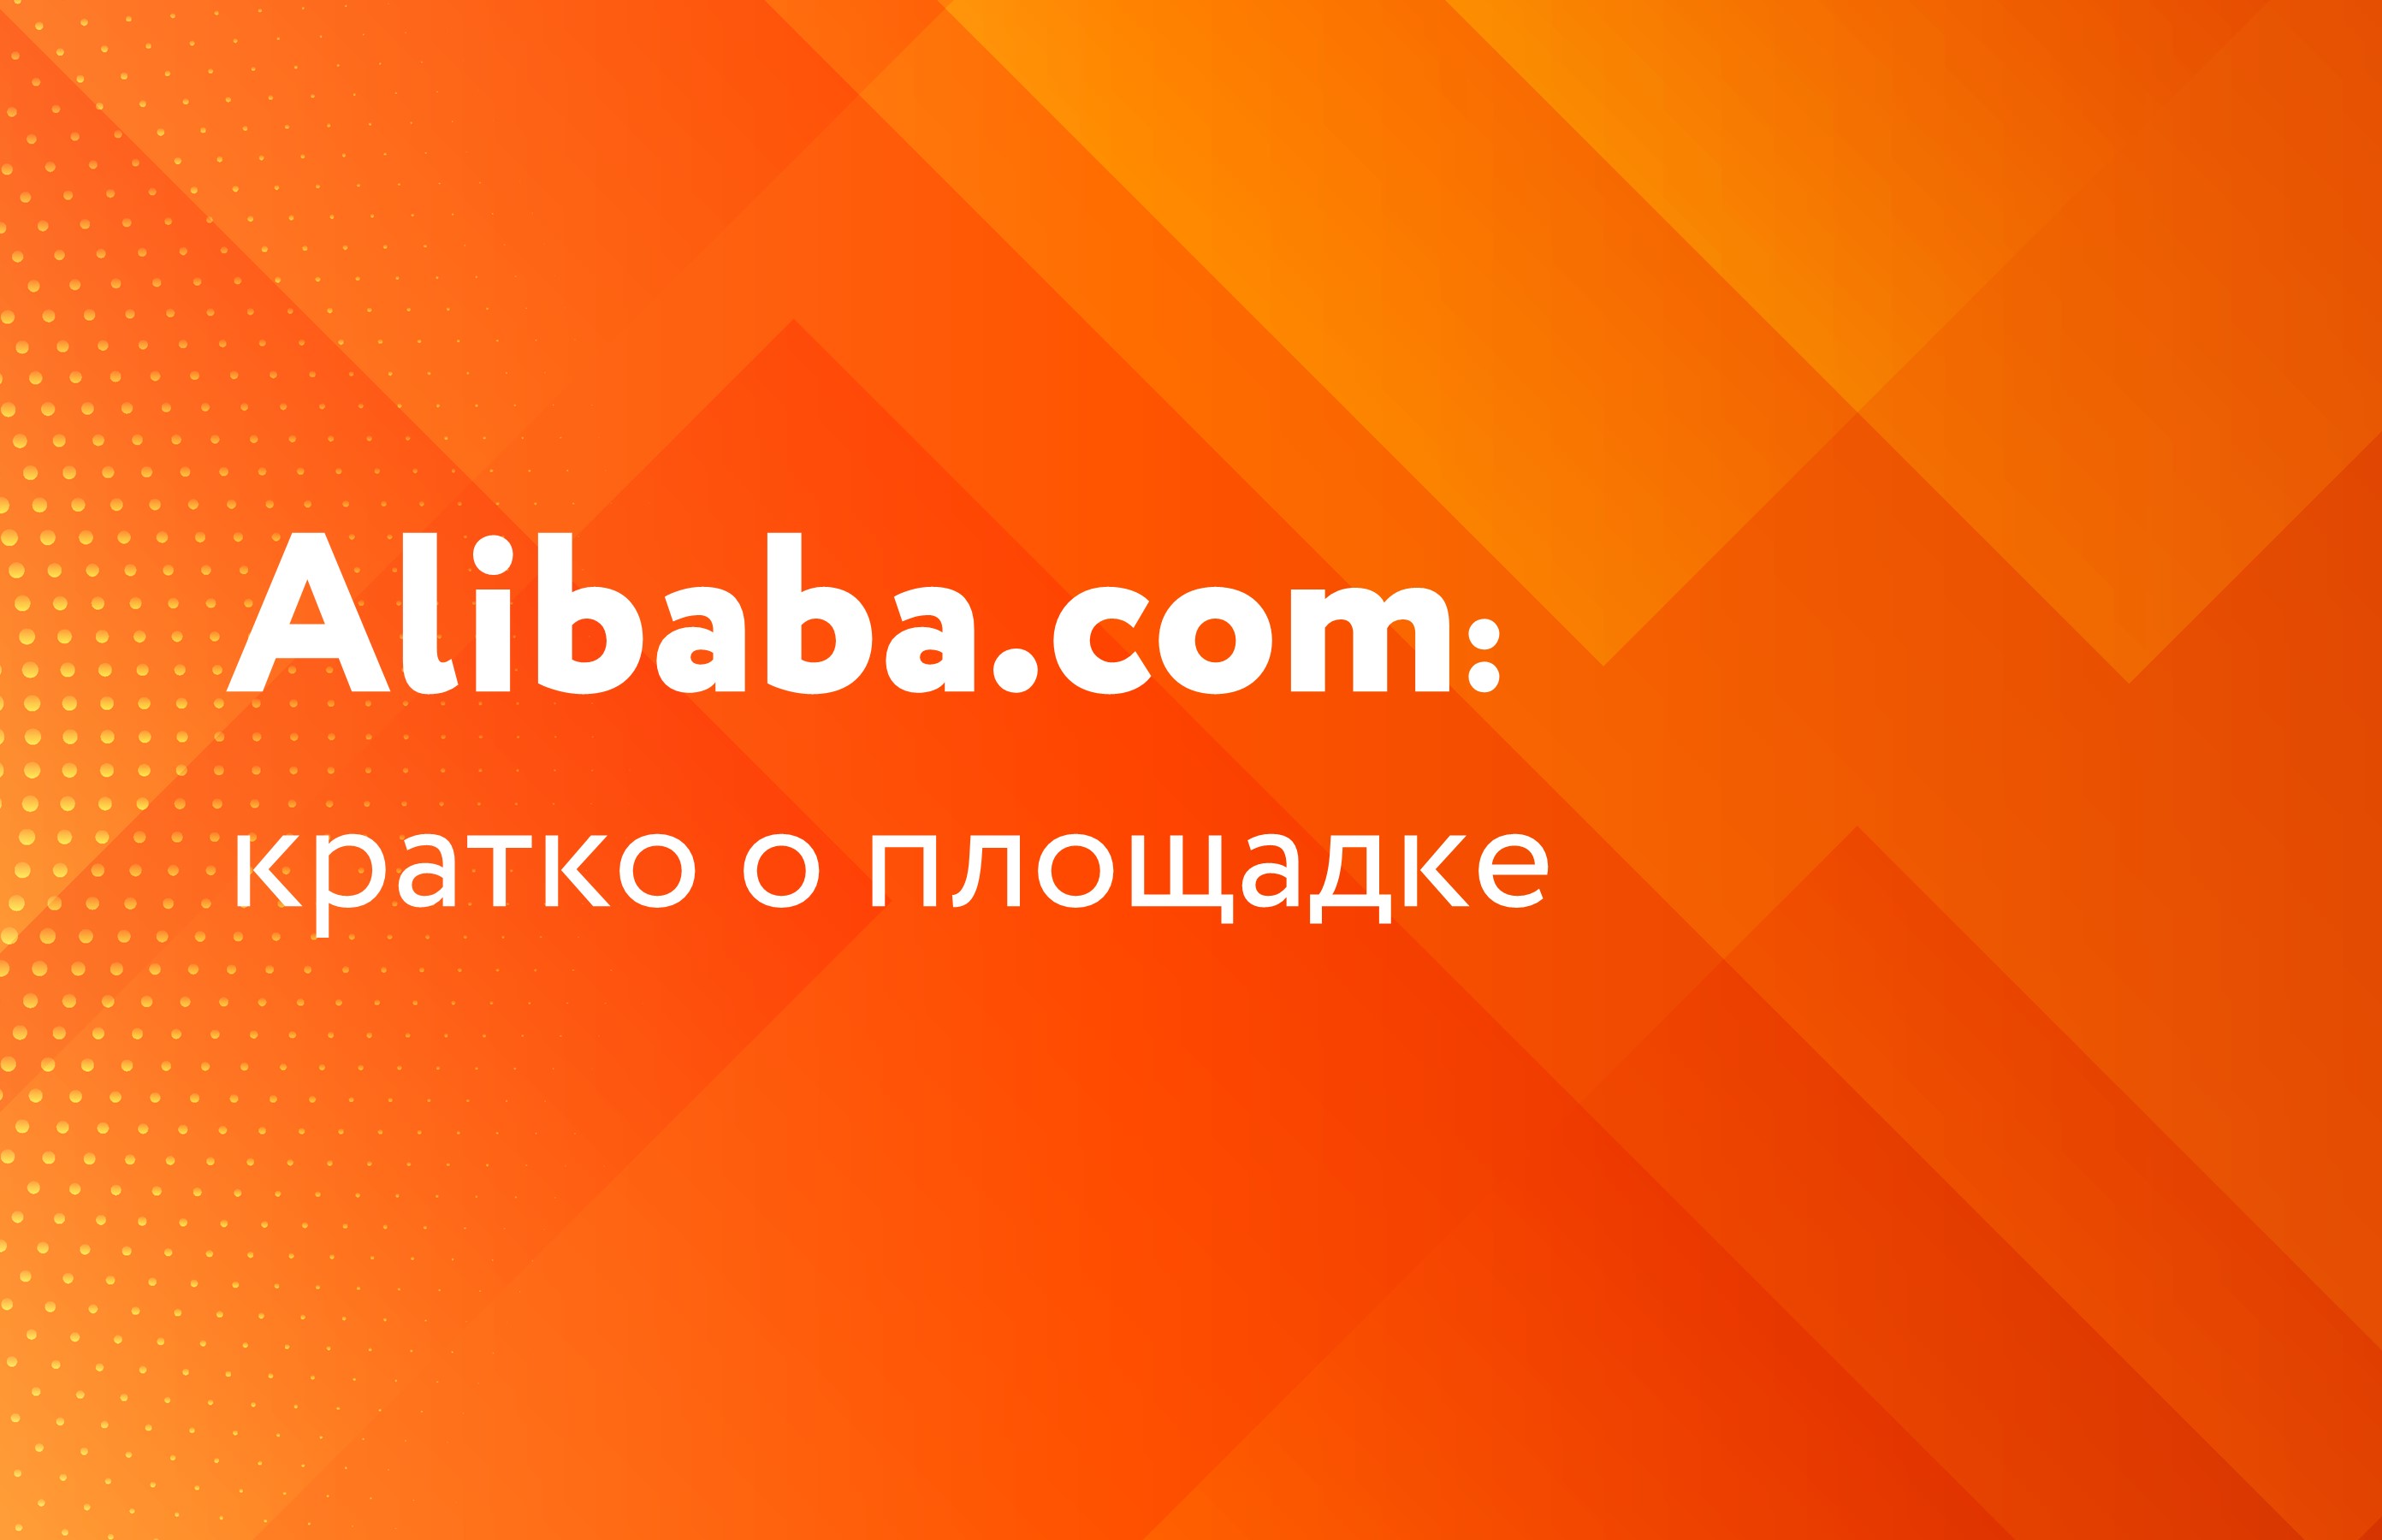 Alibaba.com: кратко о площадке